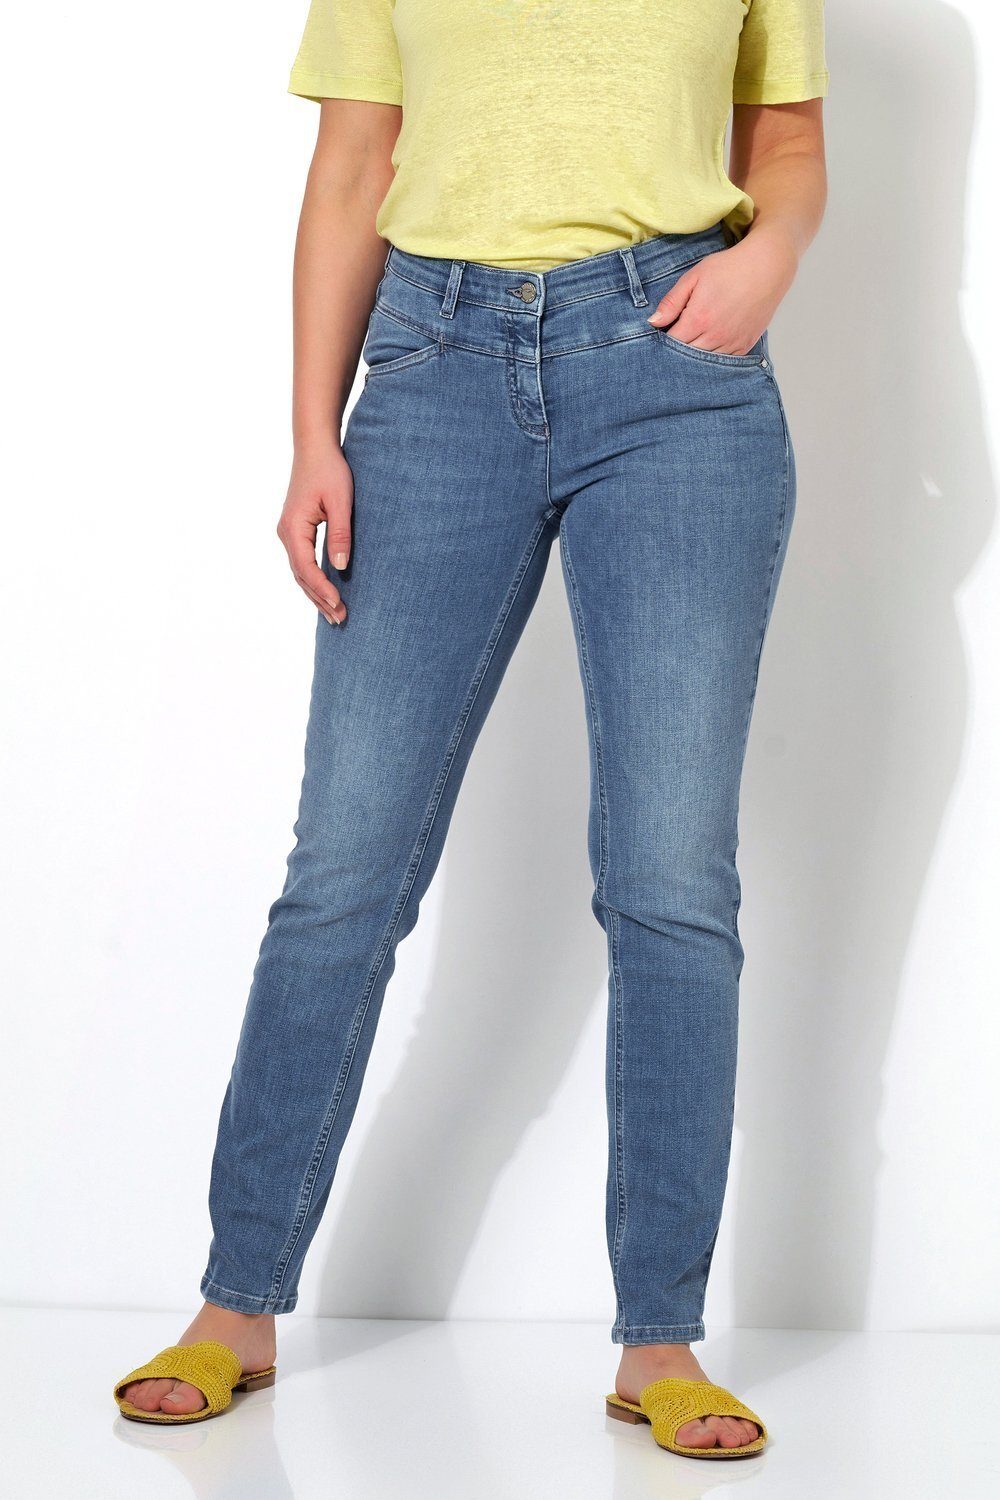 TONI vorne 534 Slim-fit-Jeans Perfect hellblau Hüftsattel mit - Shape